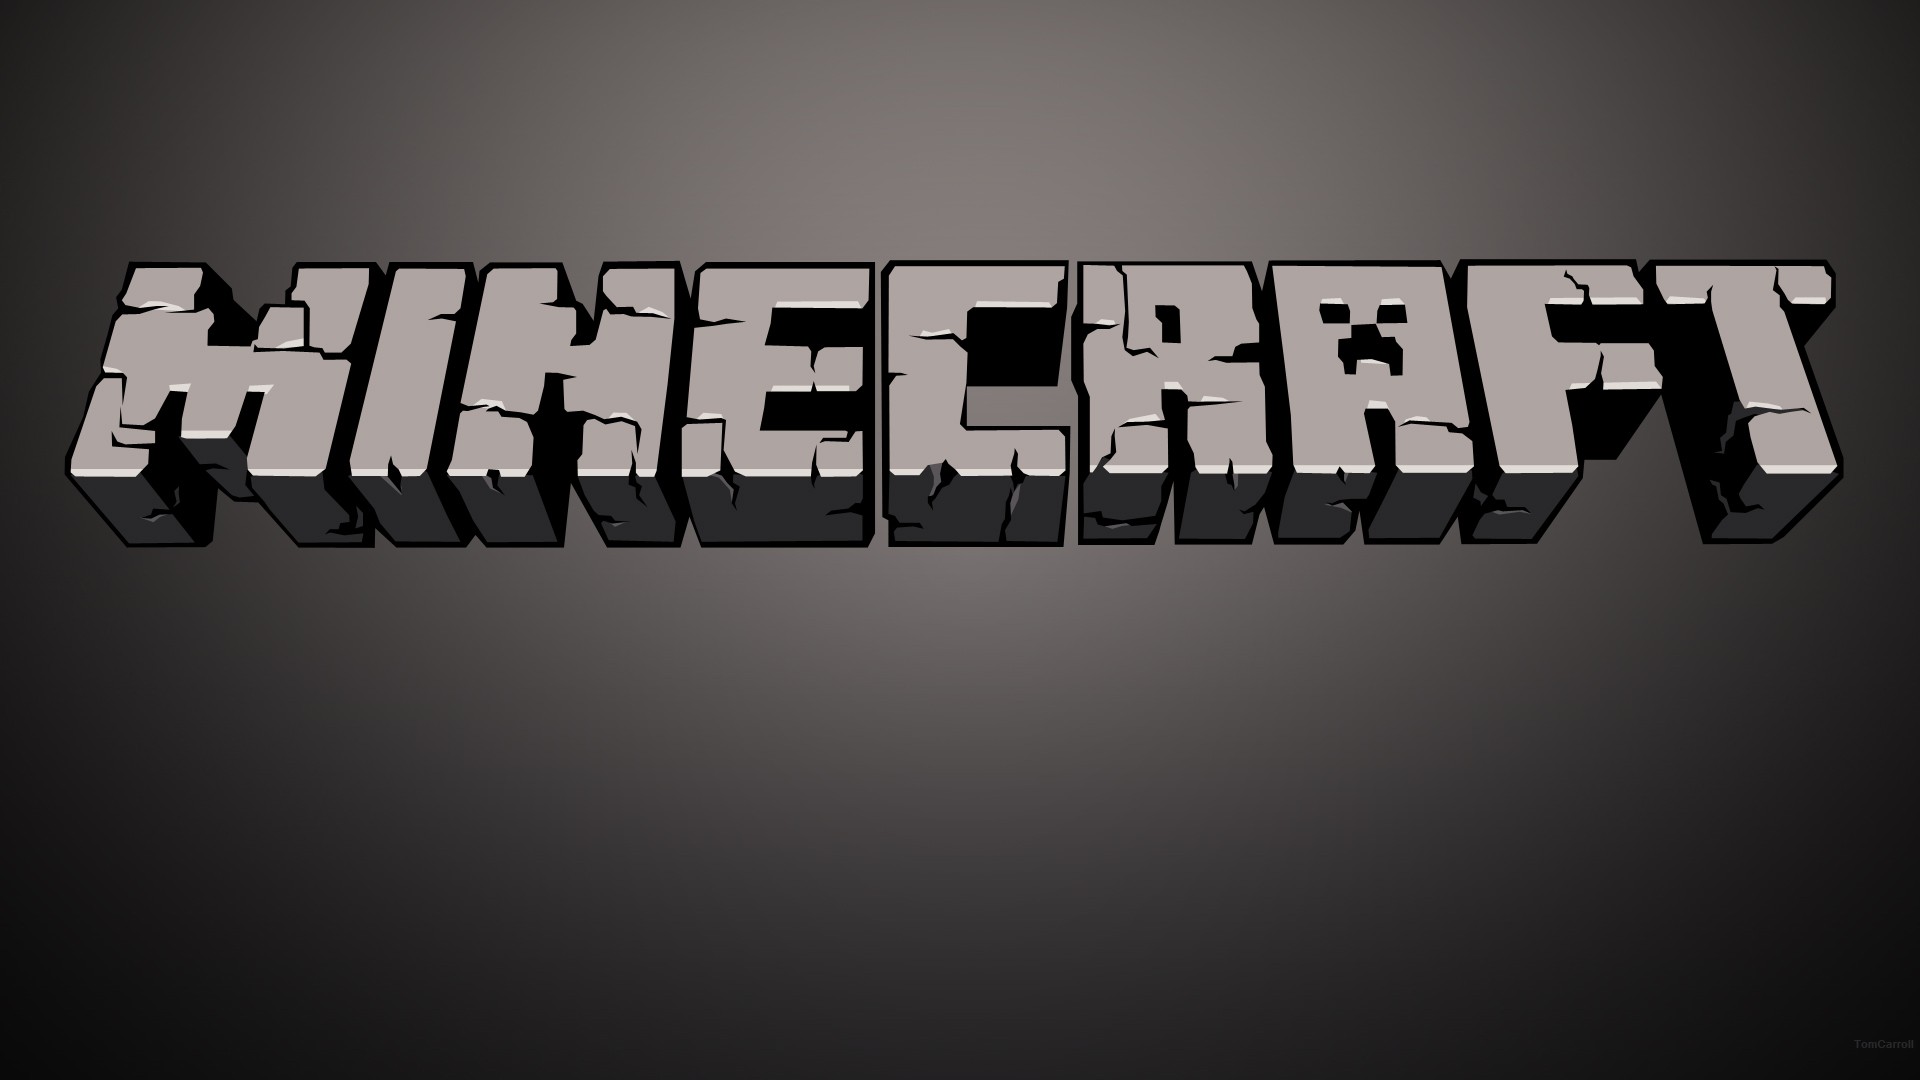 Minecraft, логотипы - обои на рабочий стол